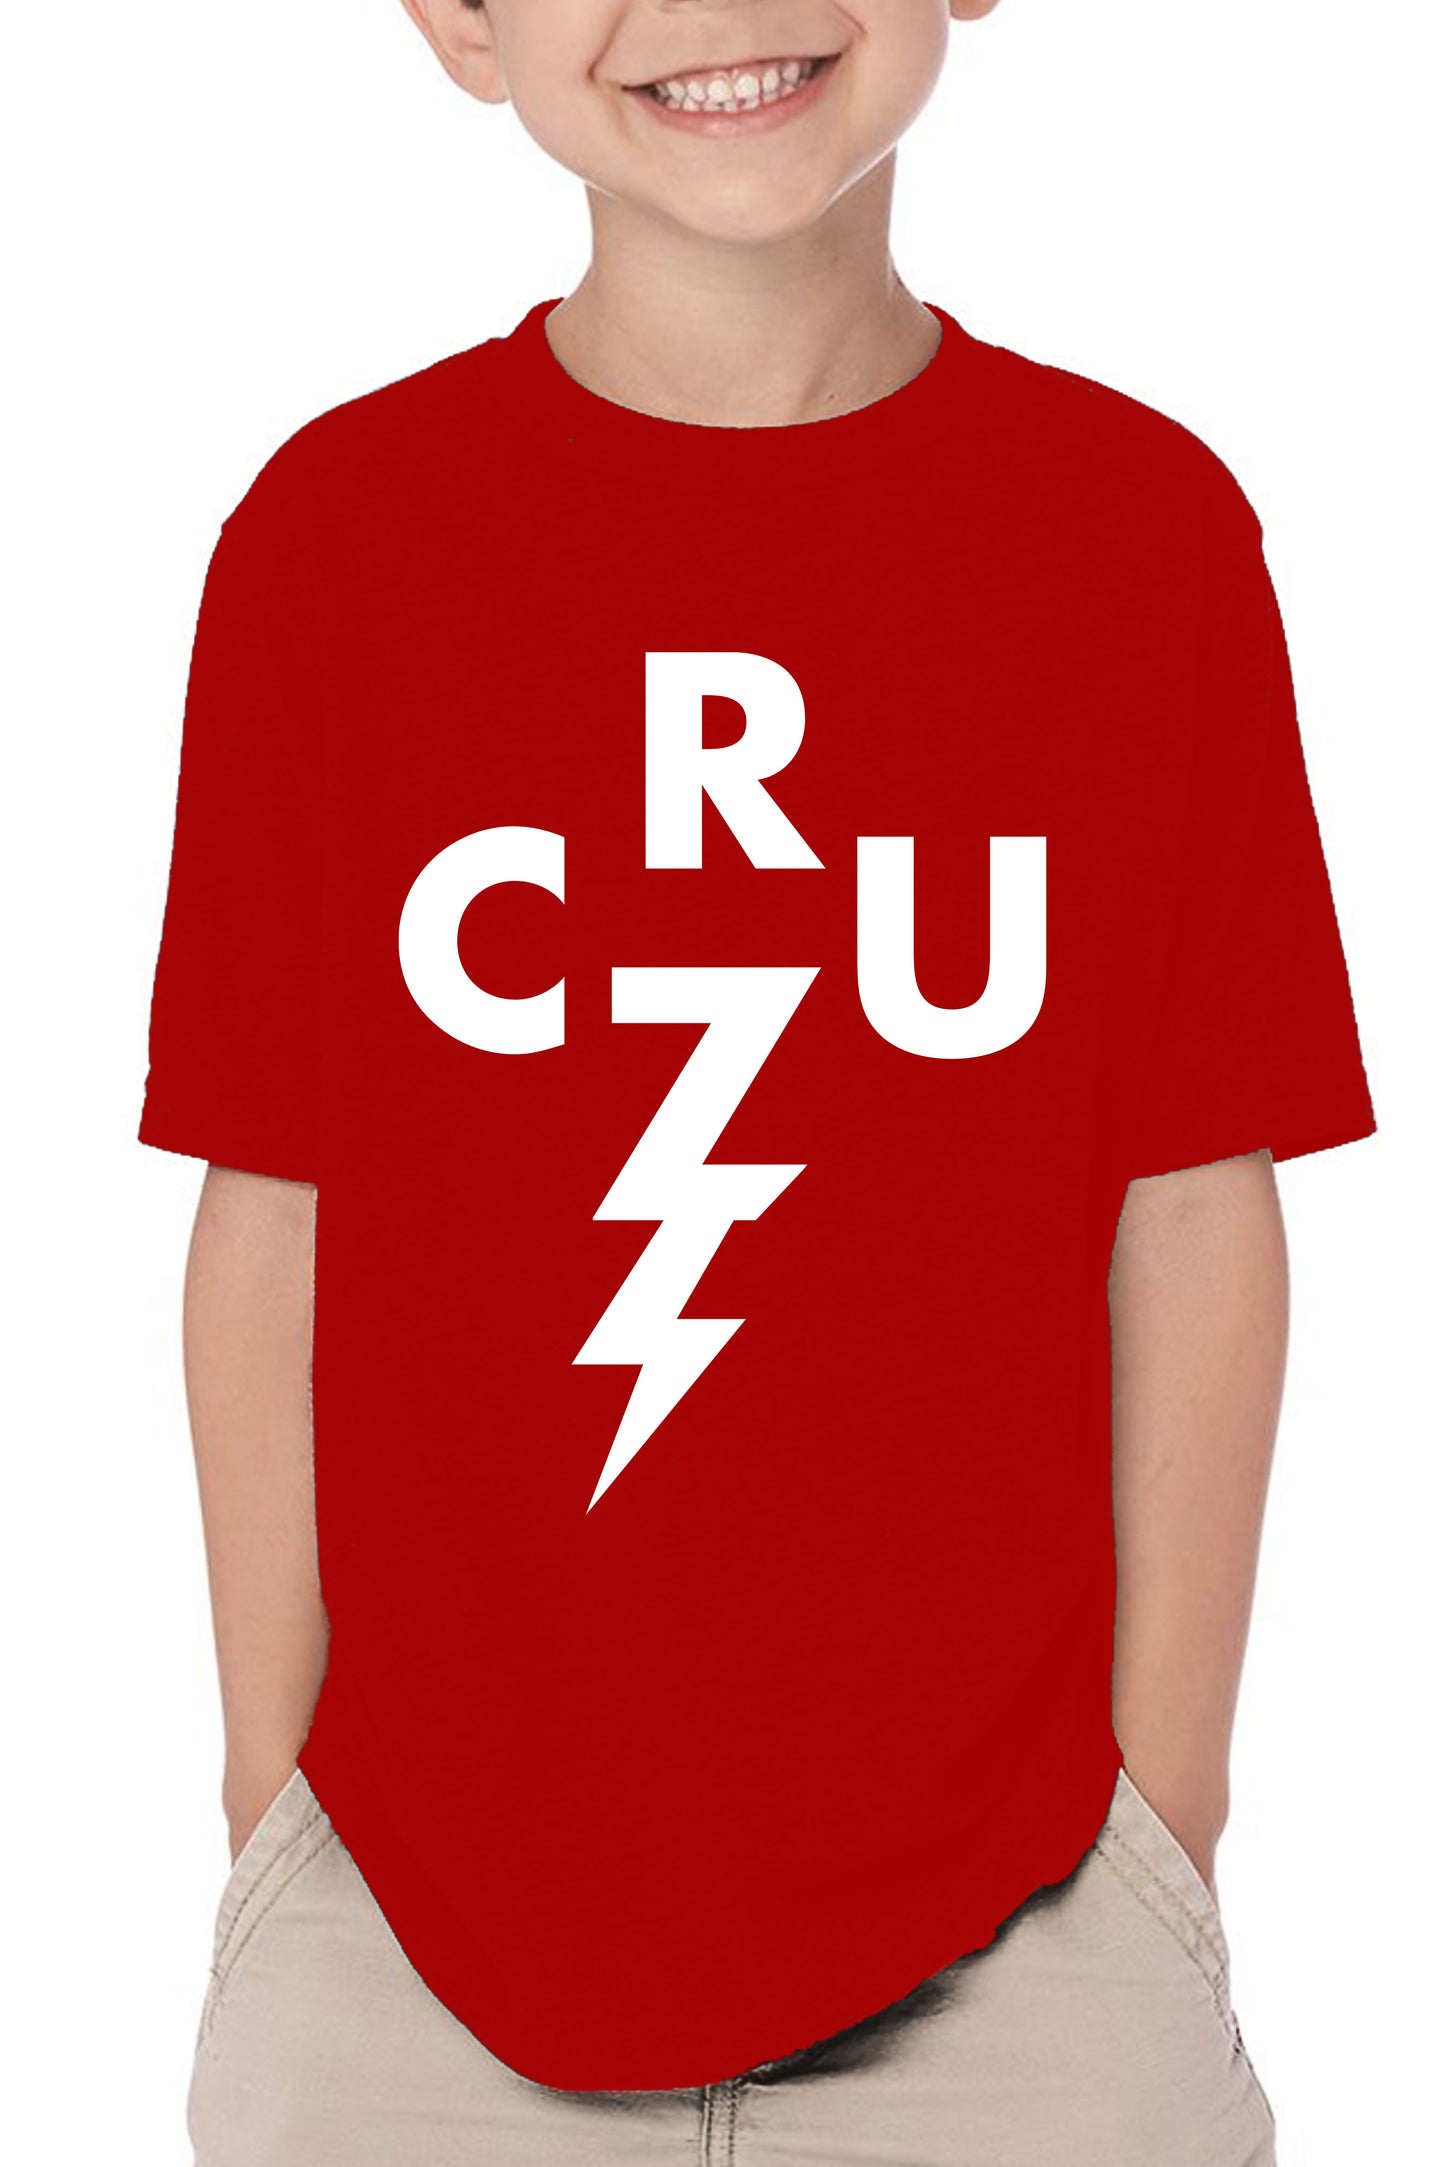 Dominick Cruz “CruzBolt” Kids T Shirt